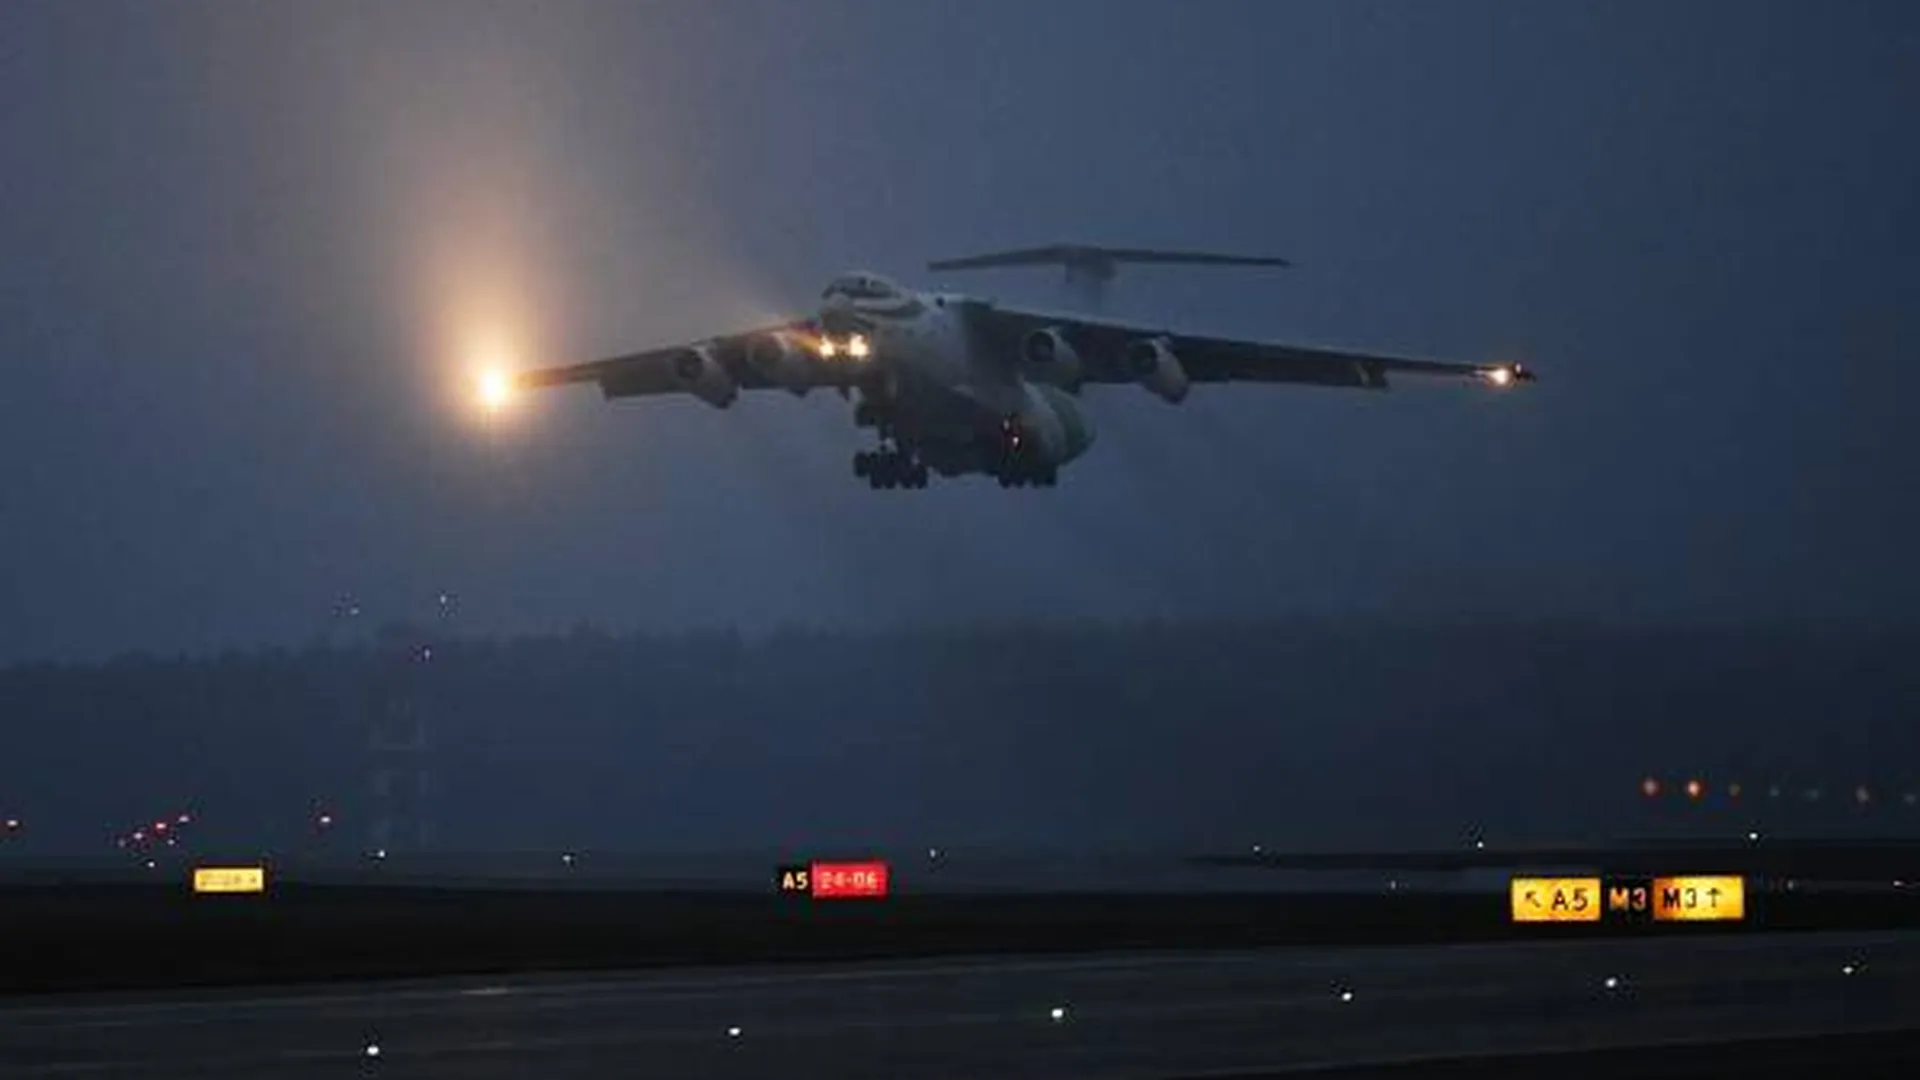 Большие новости 2 ноября. Туман выгнал самолеты из Москвы, Yung Trappa обвинили в изнасиловании, Ан-26 разбился в Судане